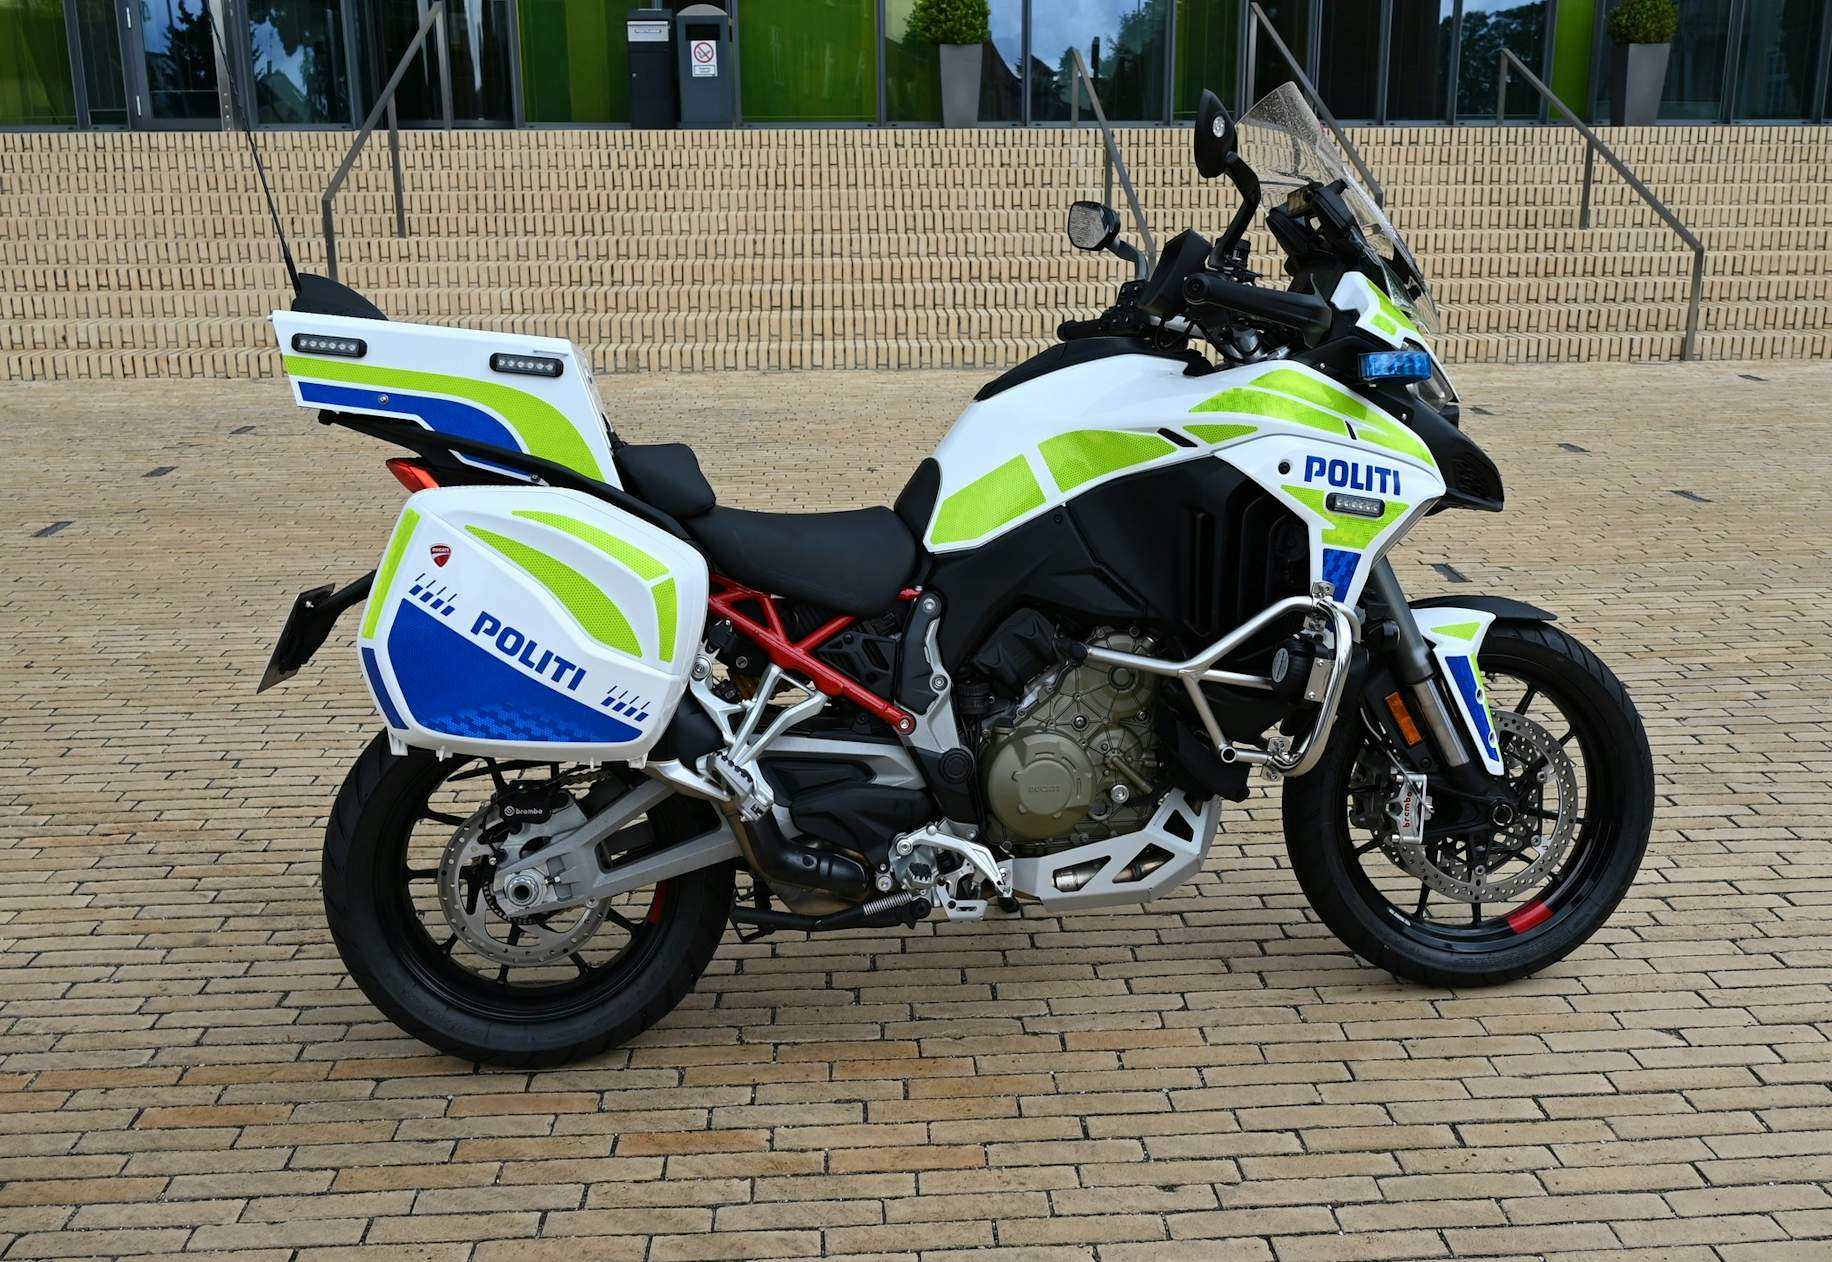 billet solidaritet læbe Video: Politiet får sine første Ducati patruljemotorcykler | Bilmagasinet.dk